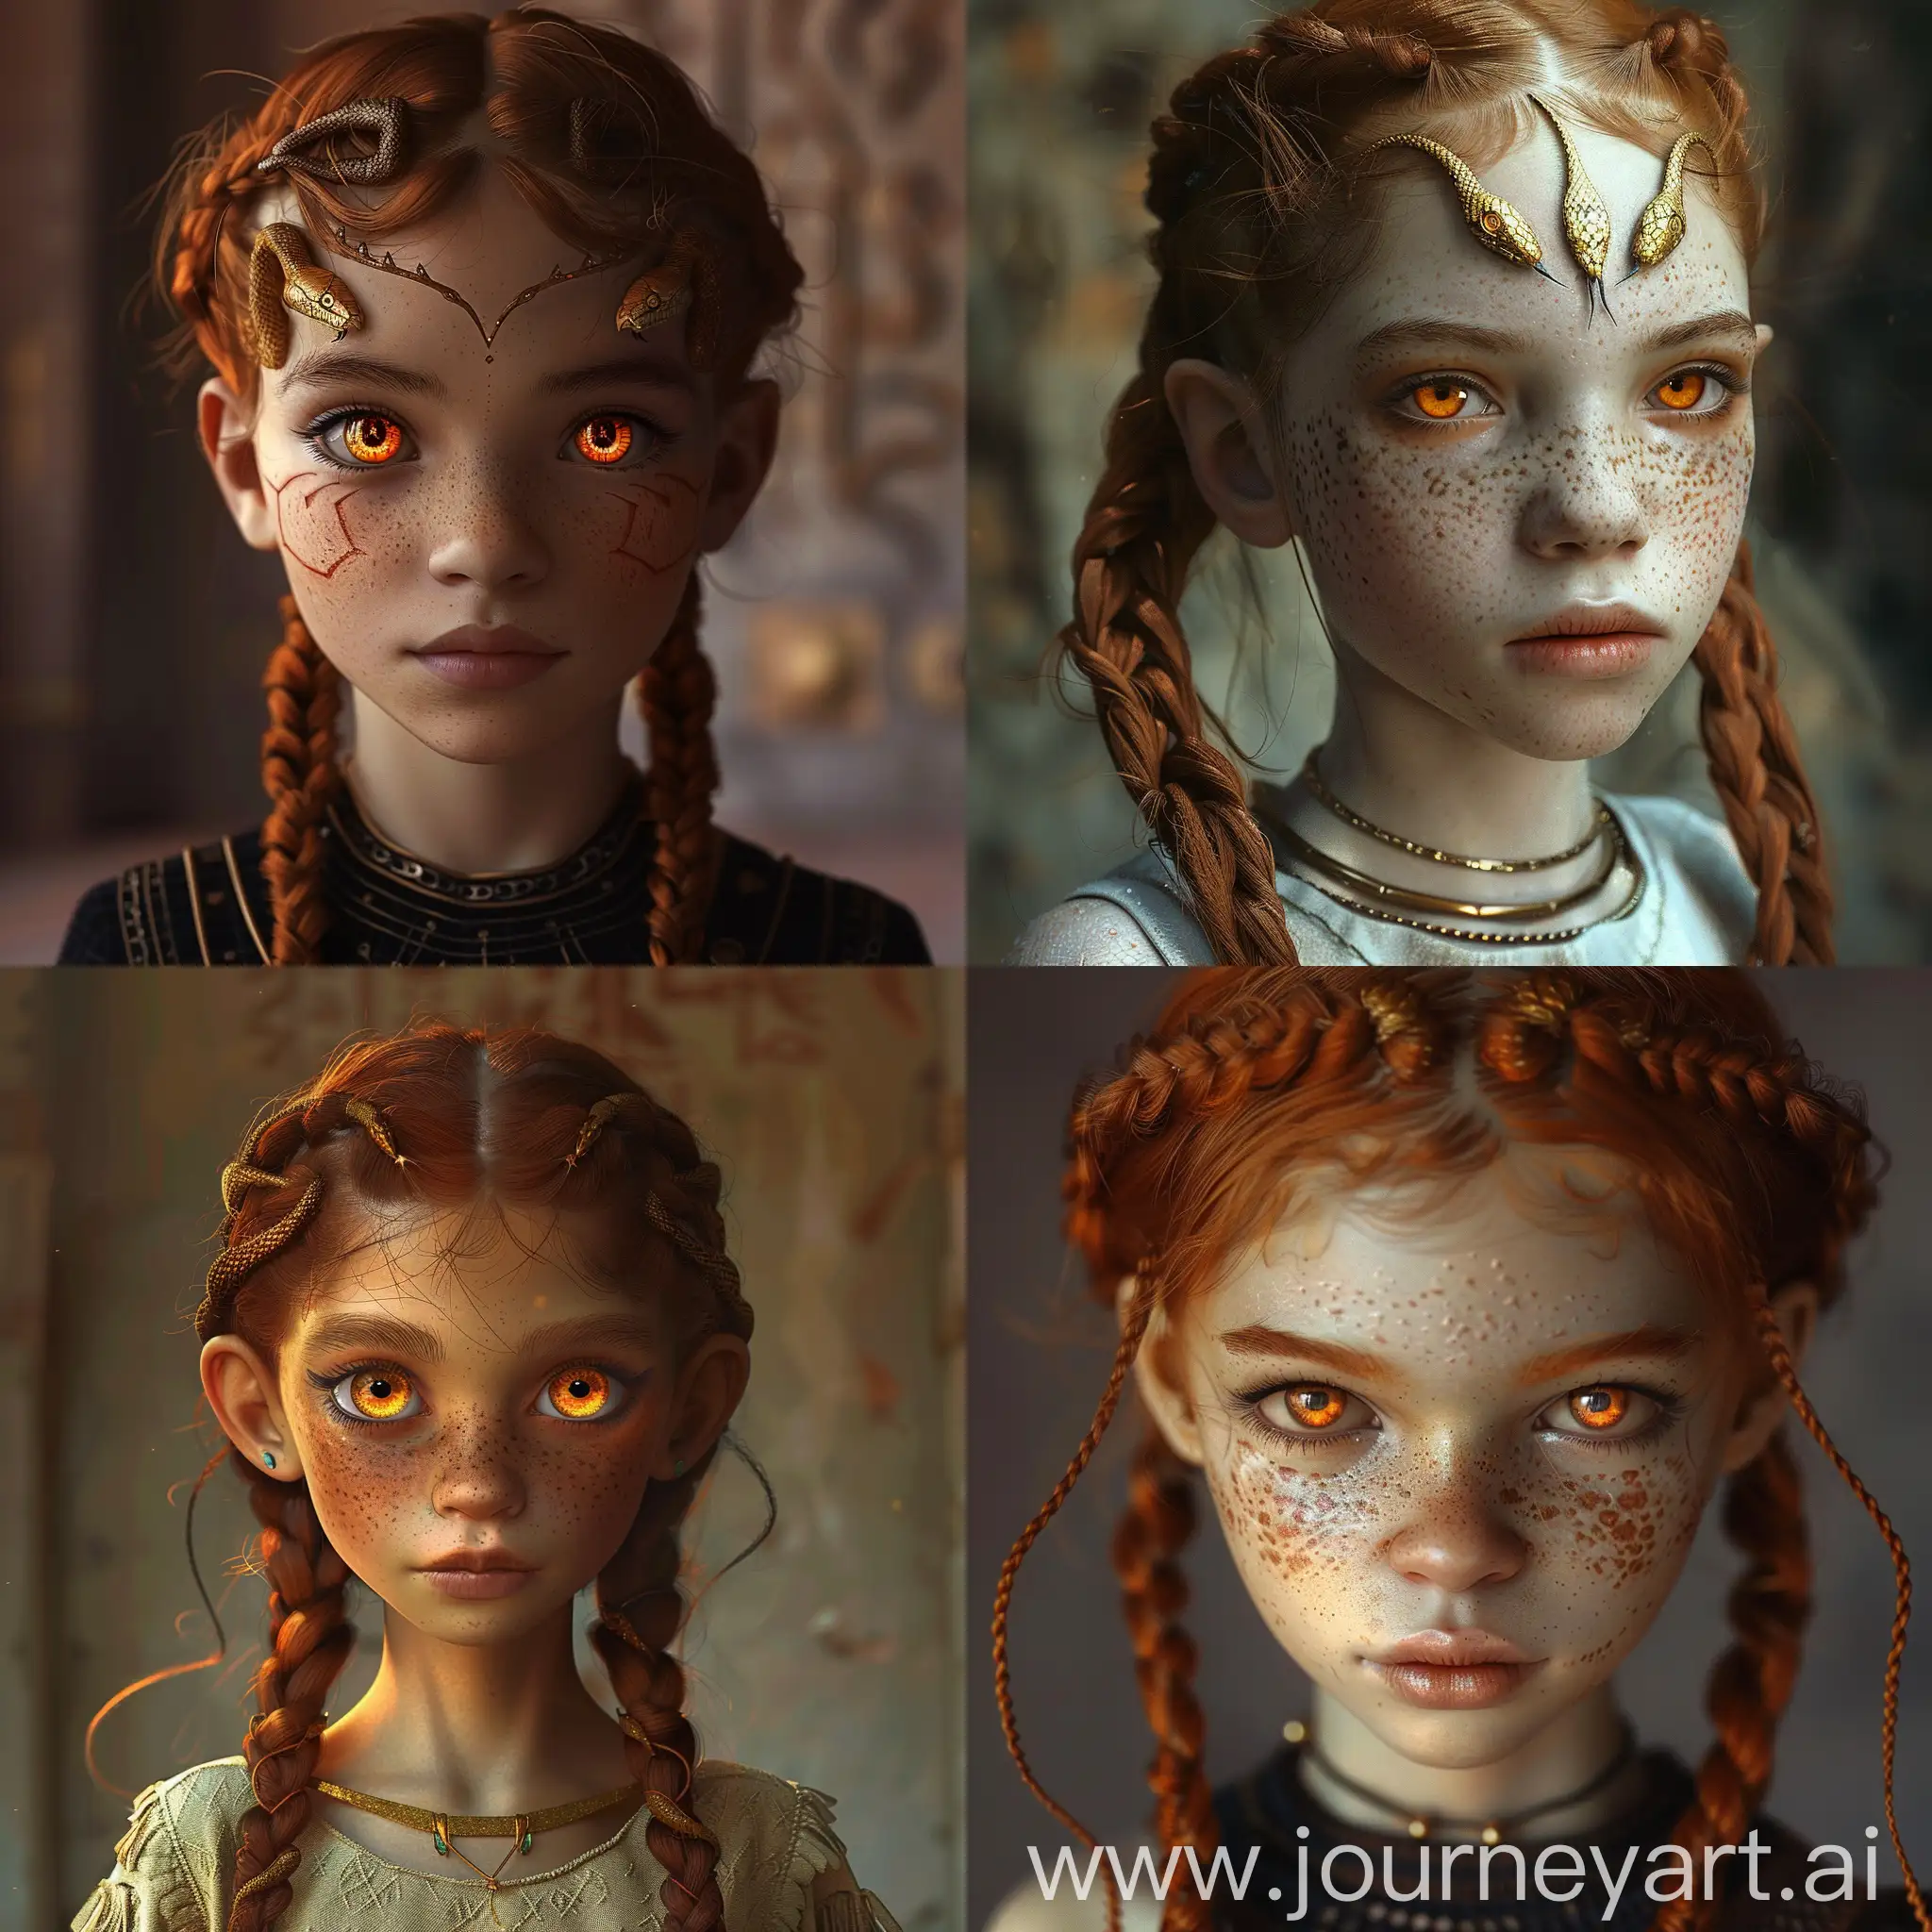 девочка 10 лет, египетской внешности, с змеиными глазами янтарного цвета, с змеиными чертами лица, с медово-русыми волосами заплетёнными в две косички, живущая в мире тёмного фэнтези.